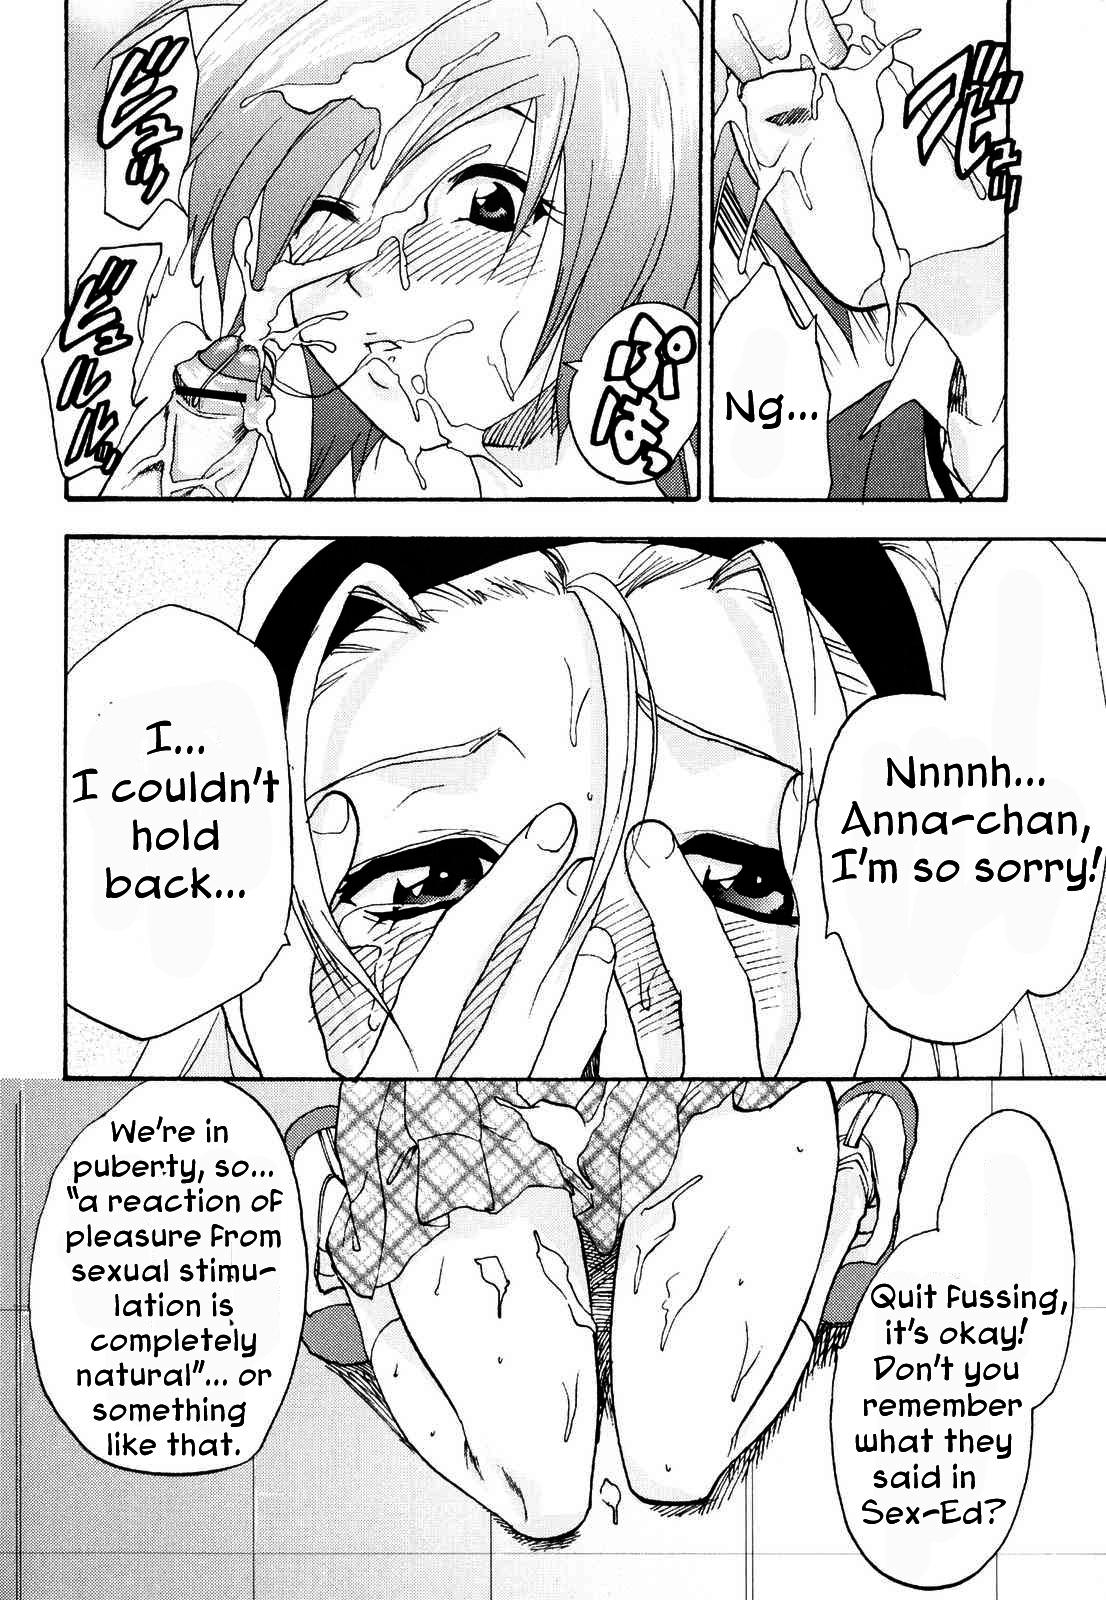 Bottom Kanojo no Himitsu to Himitsu no Kanojo case.2 | Girlfriend's Secret, Secret Girlfriend - Case 2 Bisexual - Page 6